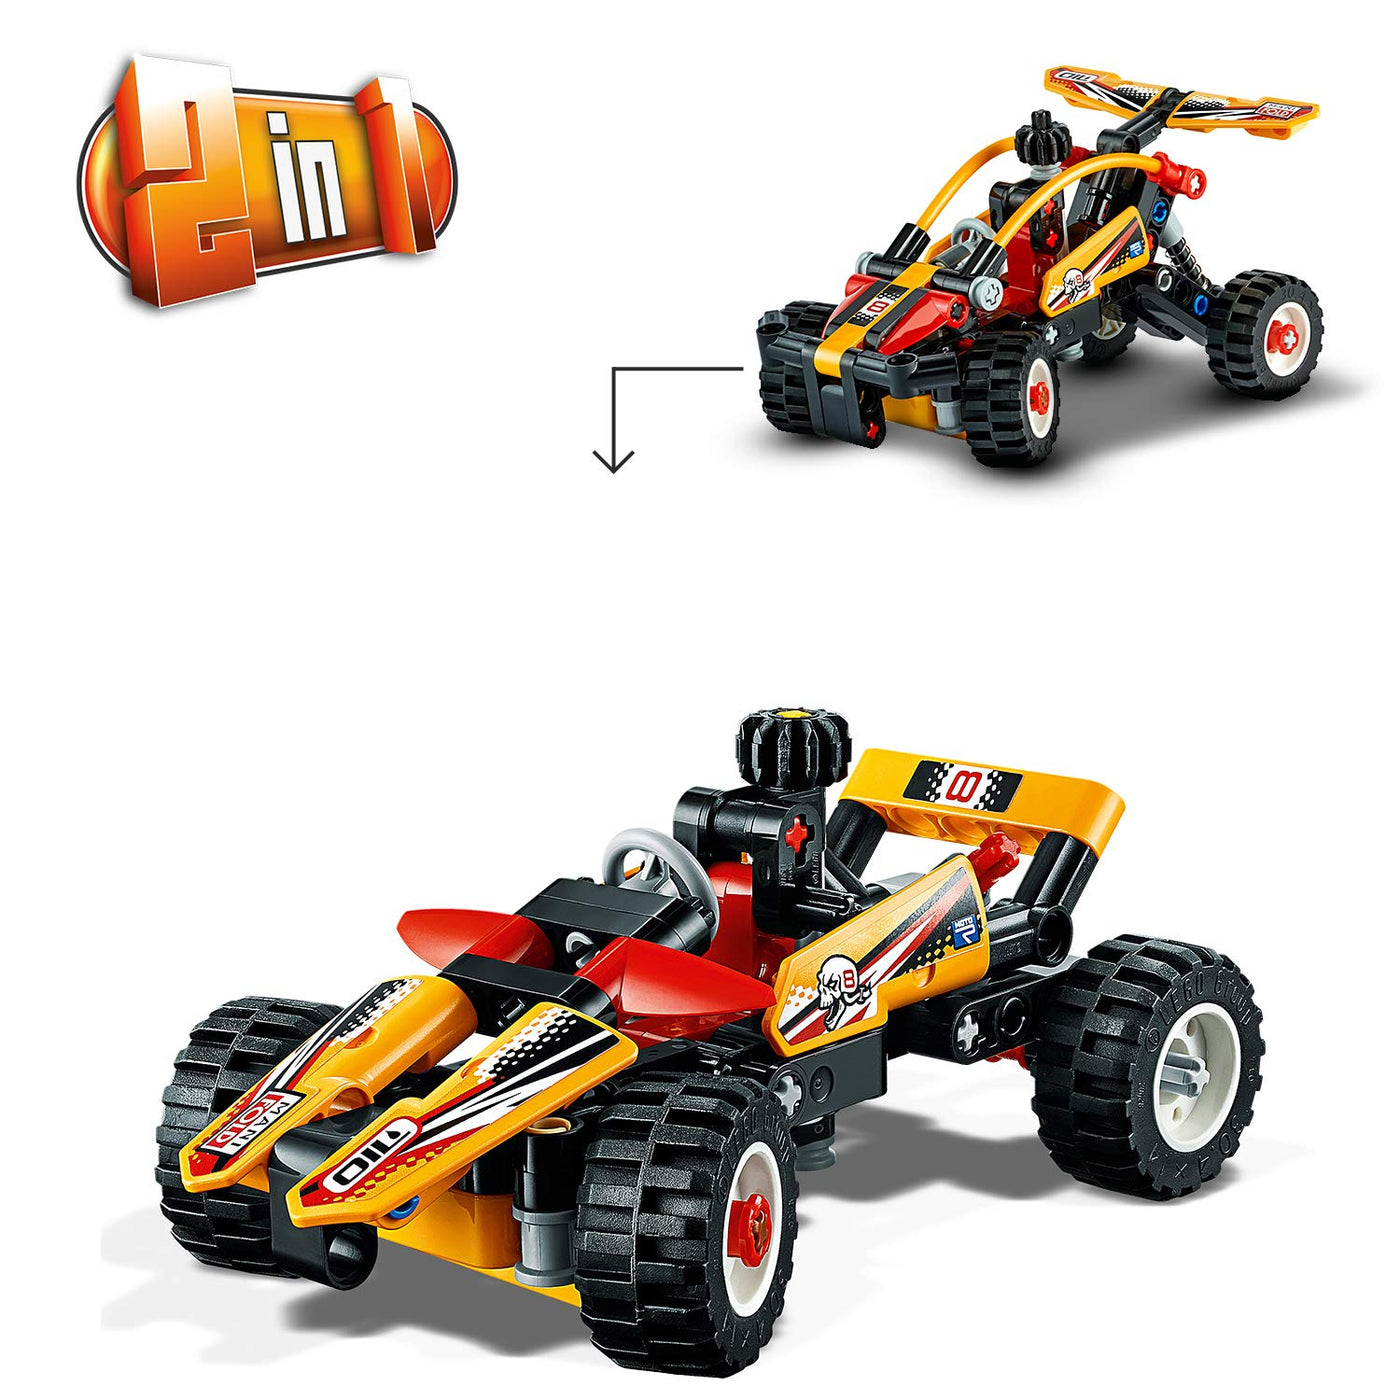 LEGO Technic Buggy Set, 42101 (Pcs 117)